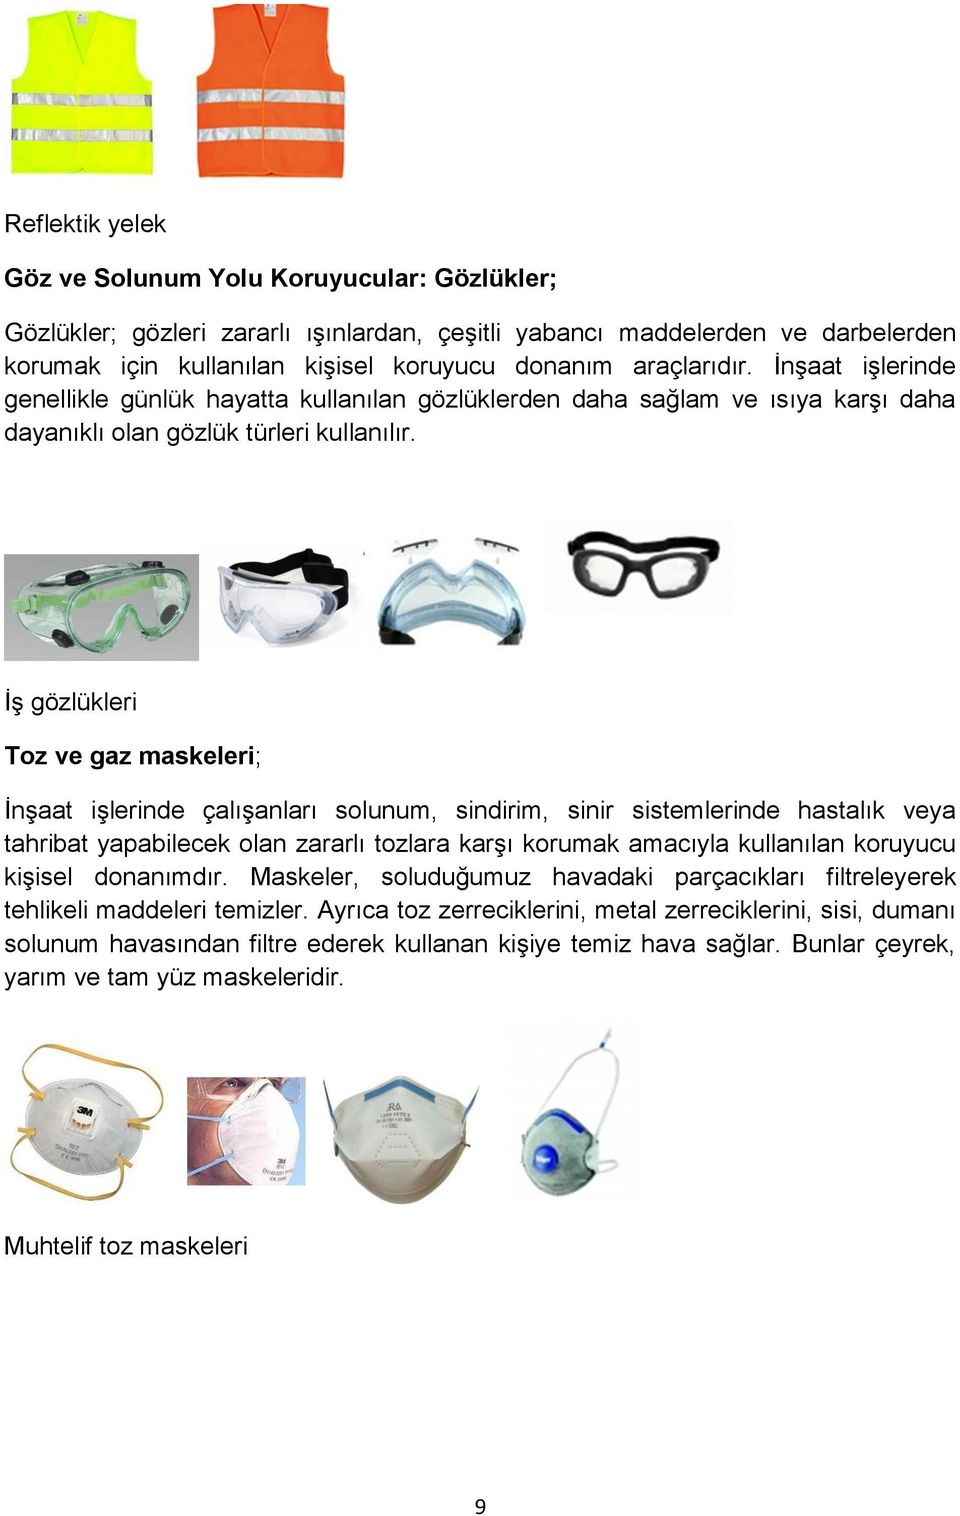 İş gözlükleri Toz ve gaz maskeleri; İnşaat işlerinde çalışanları solunum, sindirim, sinir sistemlerinde hastalık veya tahribat yapabilecek olan zararlı tozlara karşı korumak amacıyla kullanılan